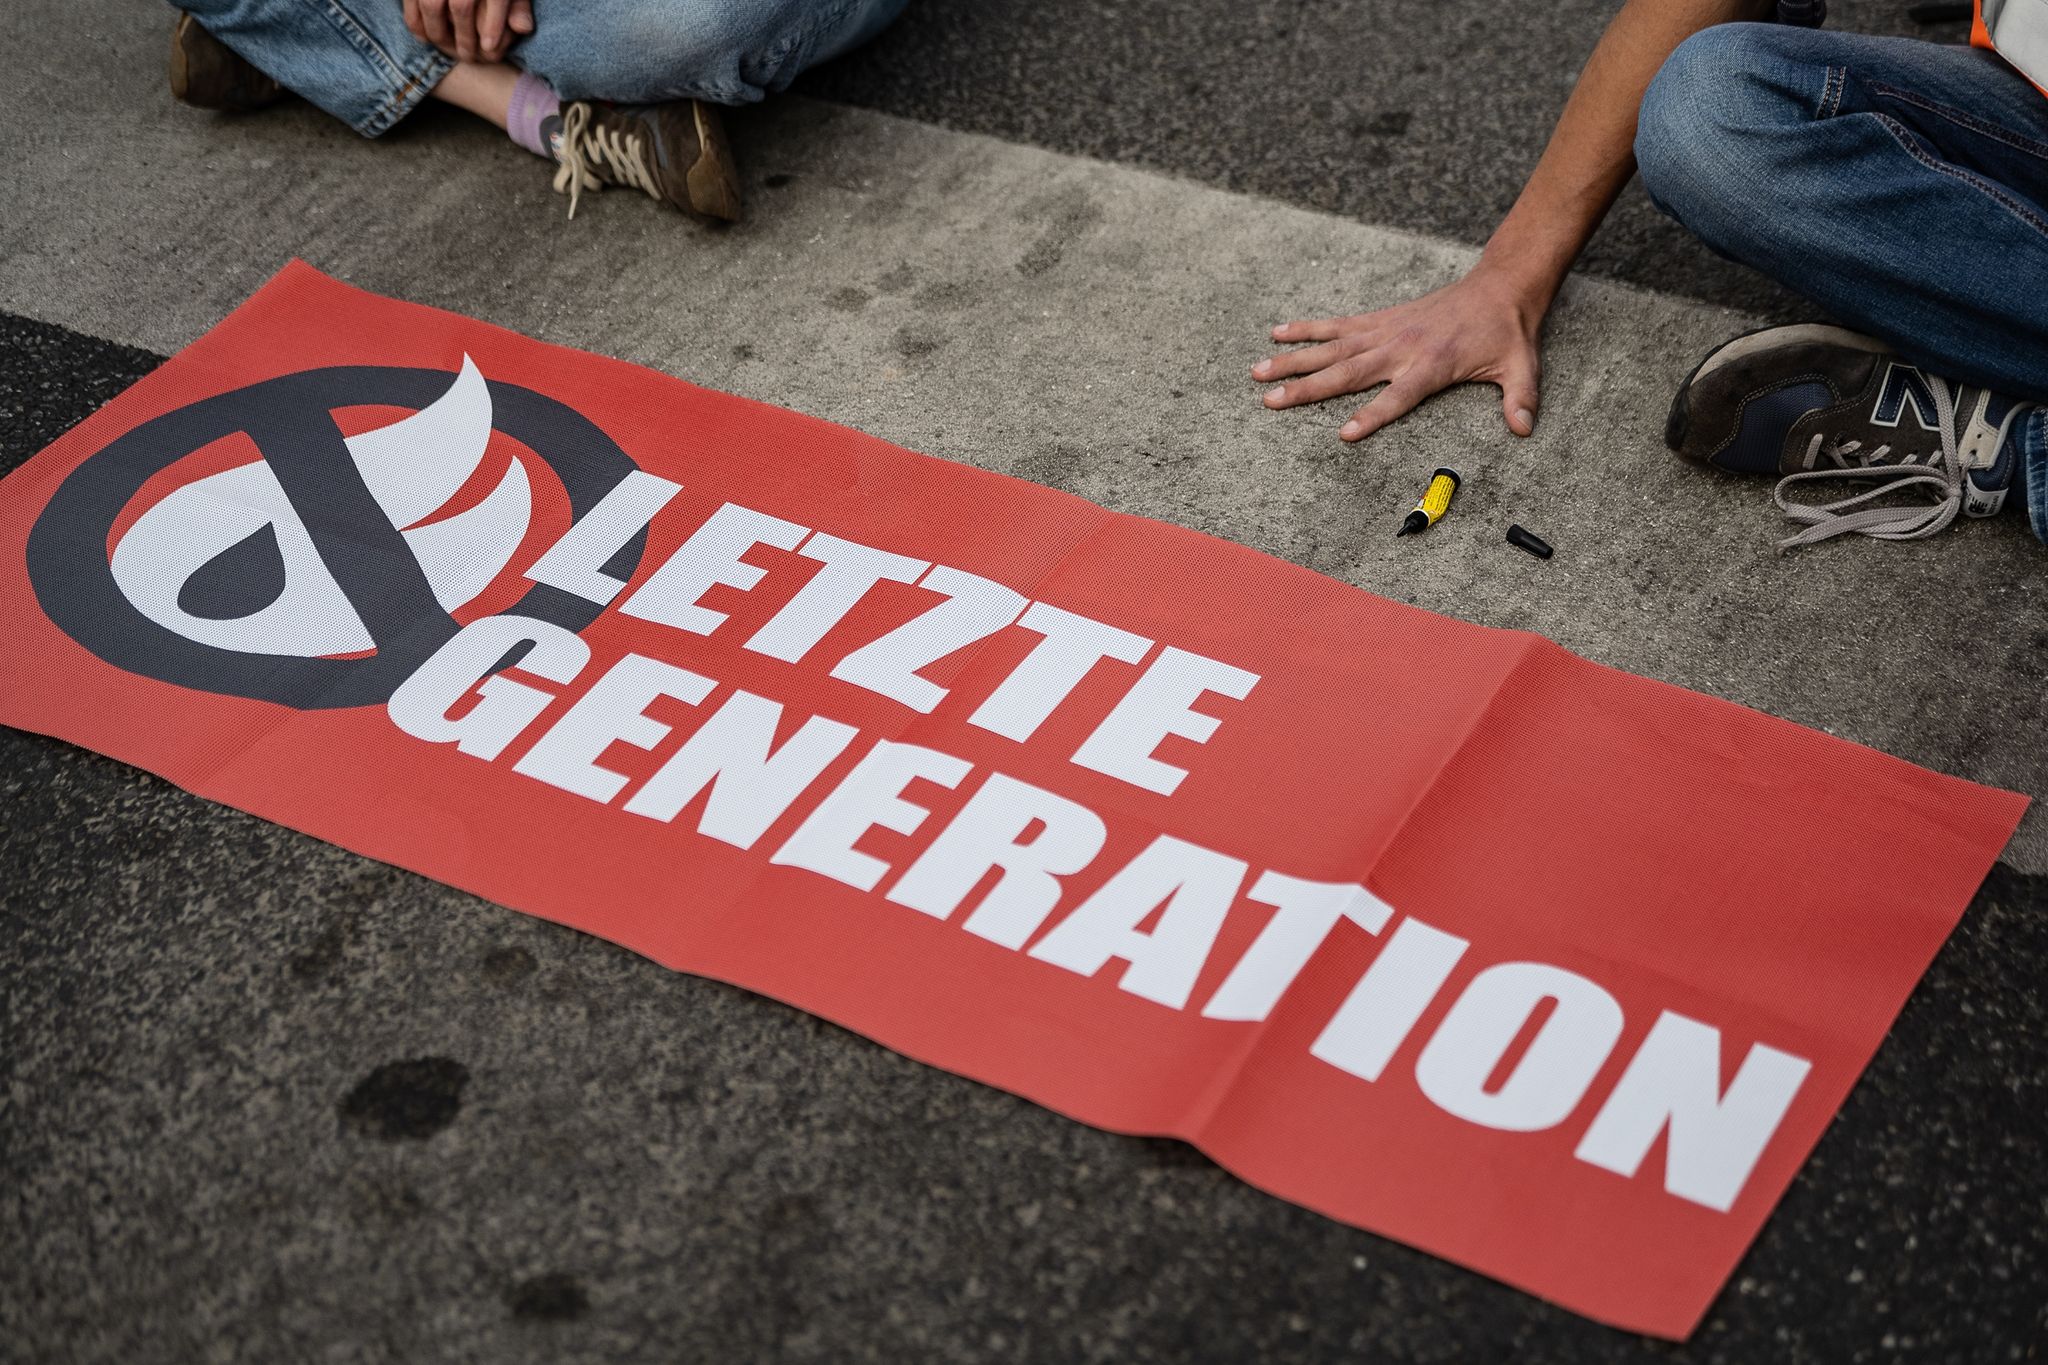 Ein Aktivist der Gruppe "Letzte Generation", der seine Hand festgeklebt hat, blockiert eine Kreuzung.